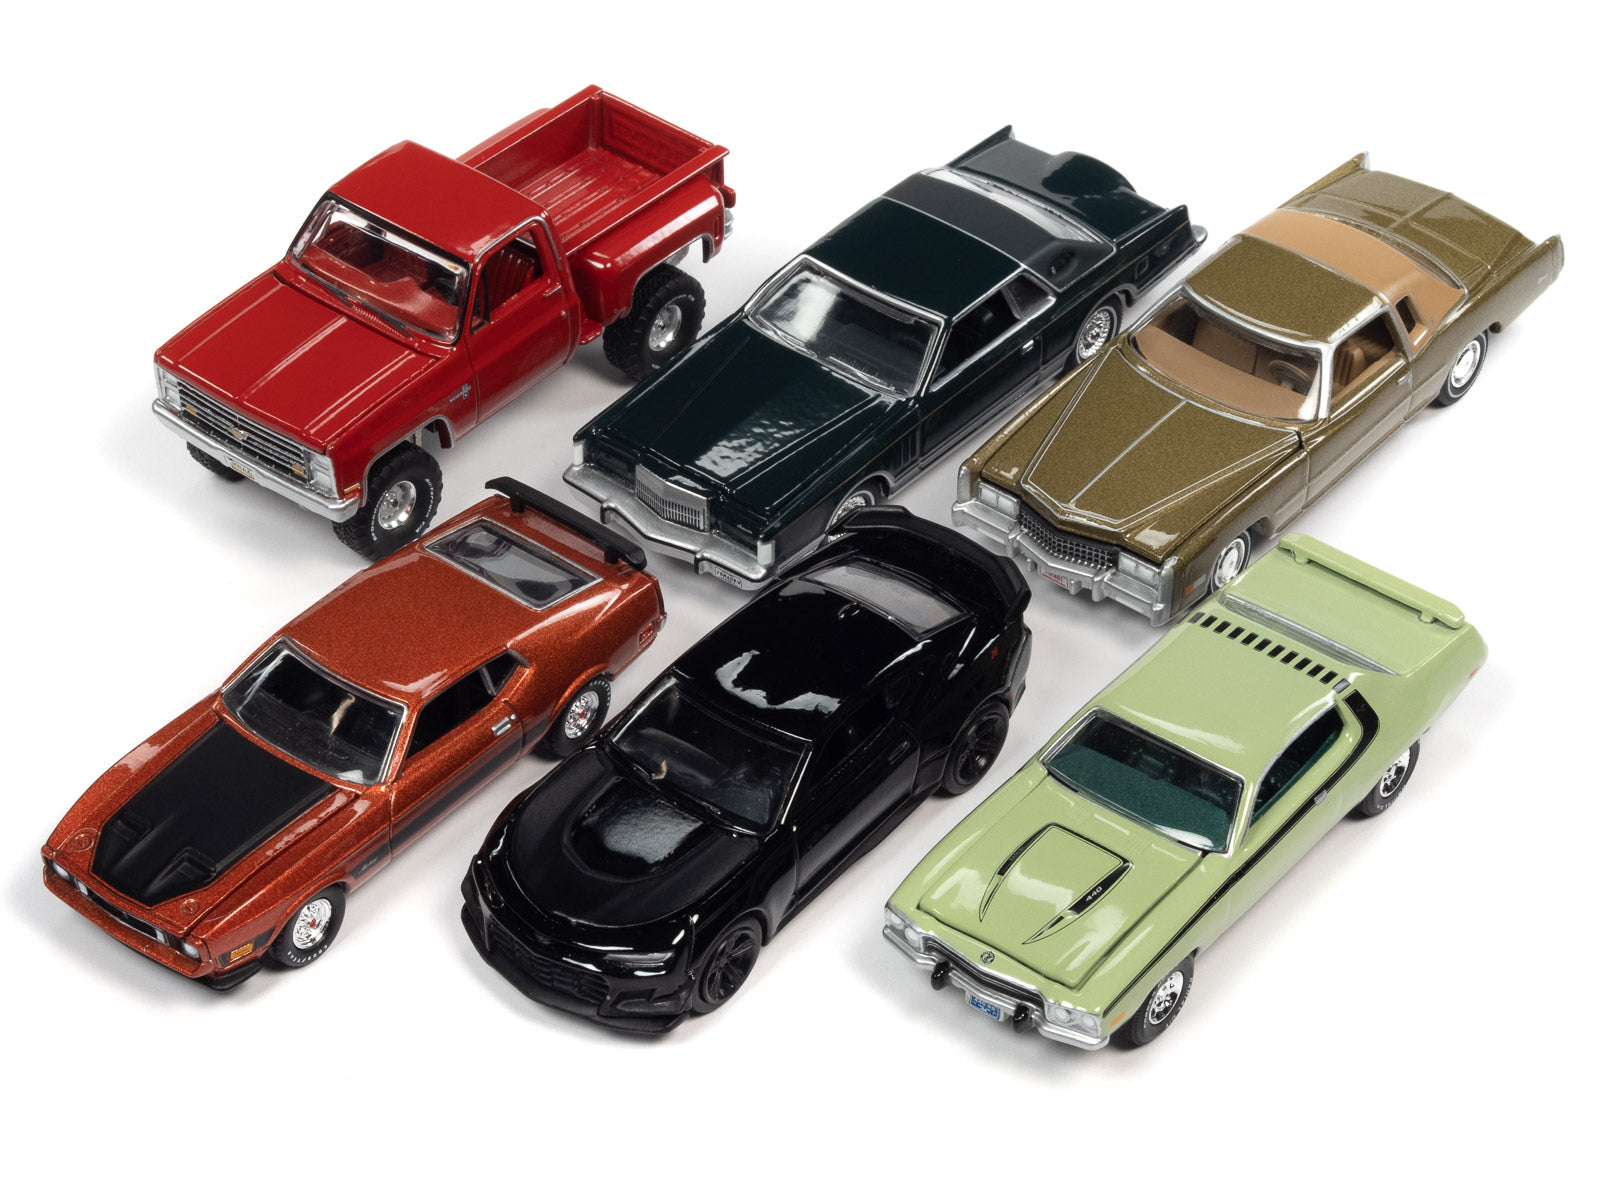 Auto World Diecast Model Cars 1:64 Scale | Auto World Store | Auto 